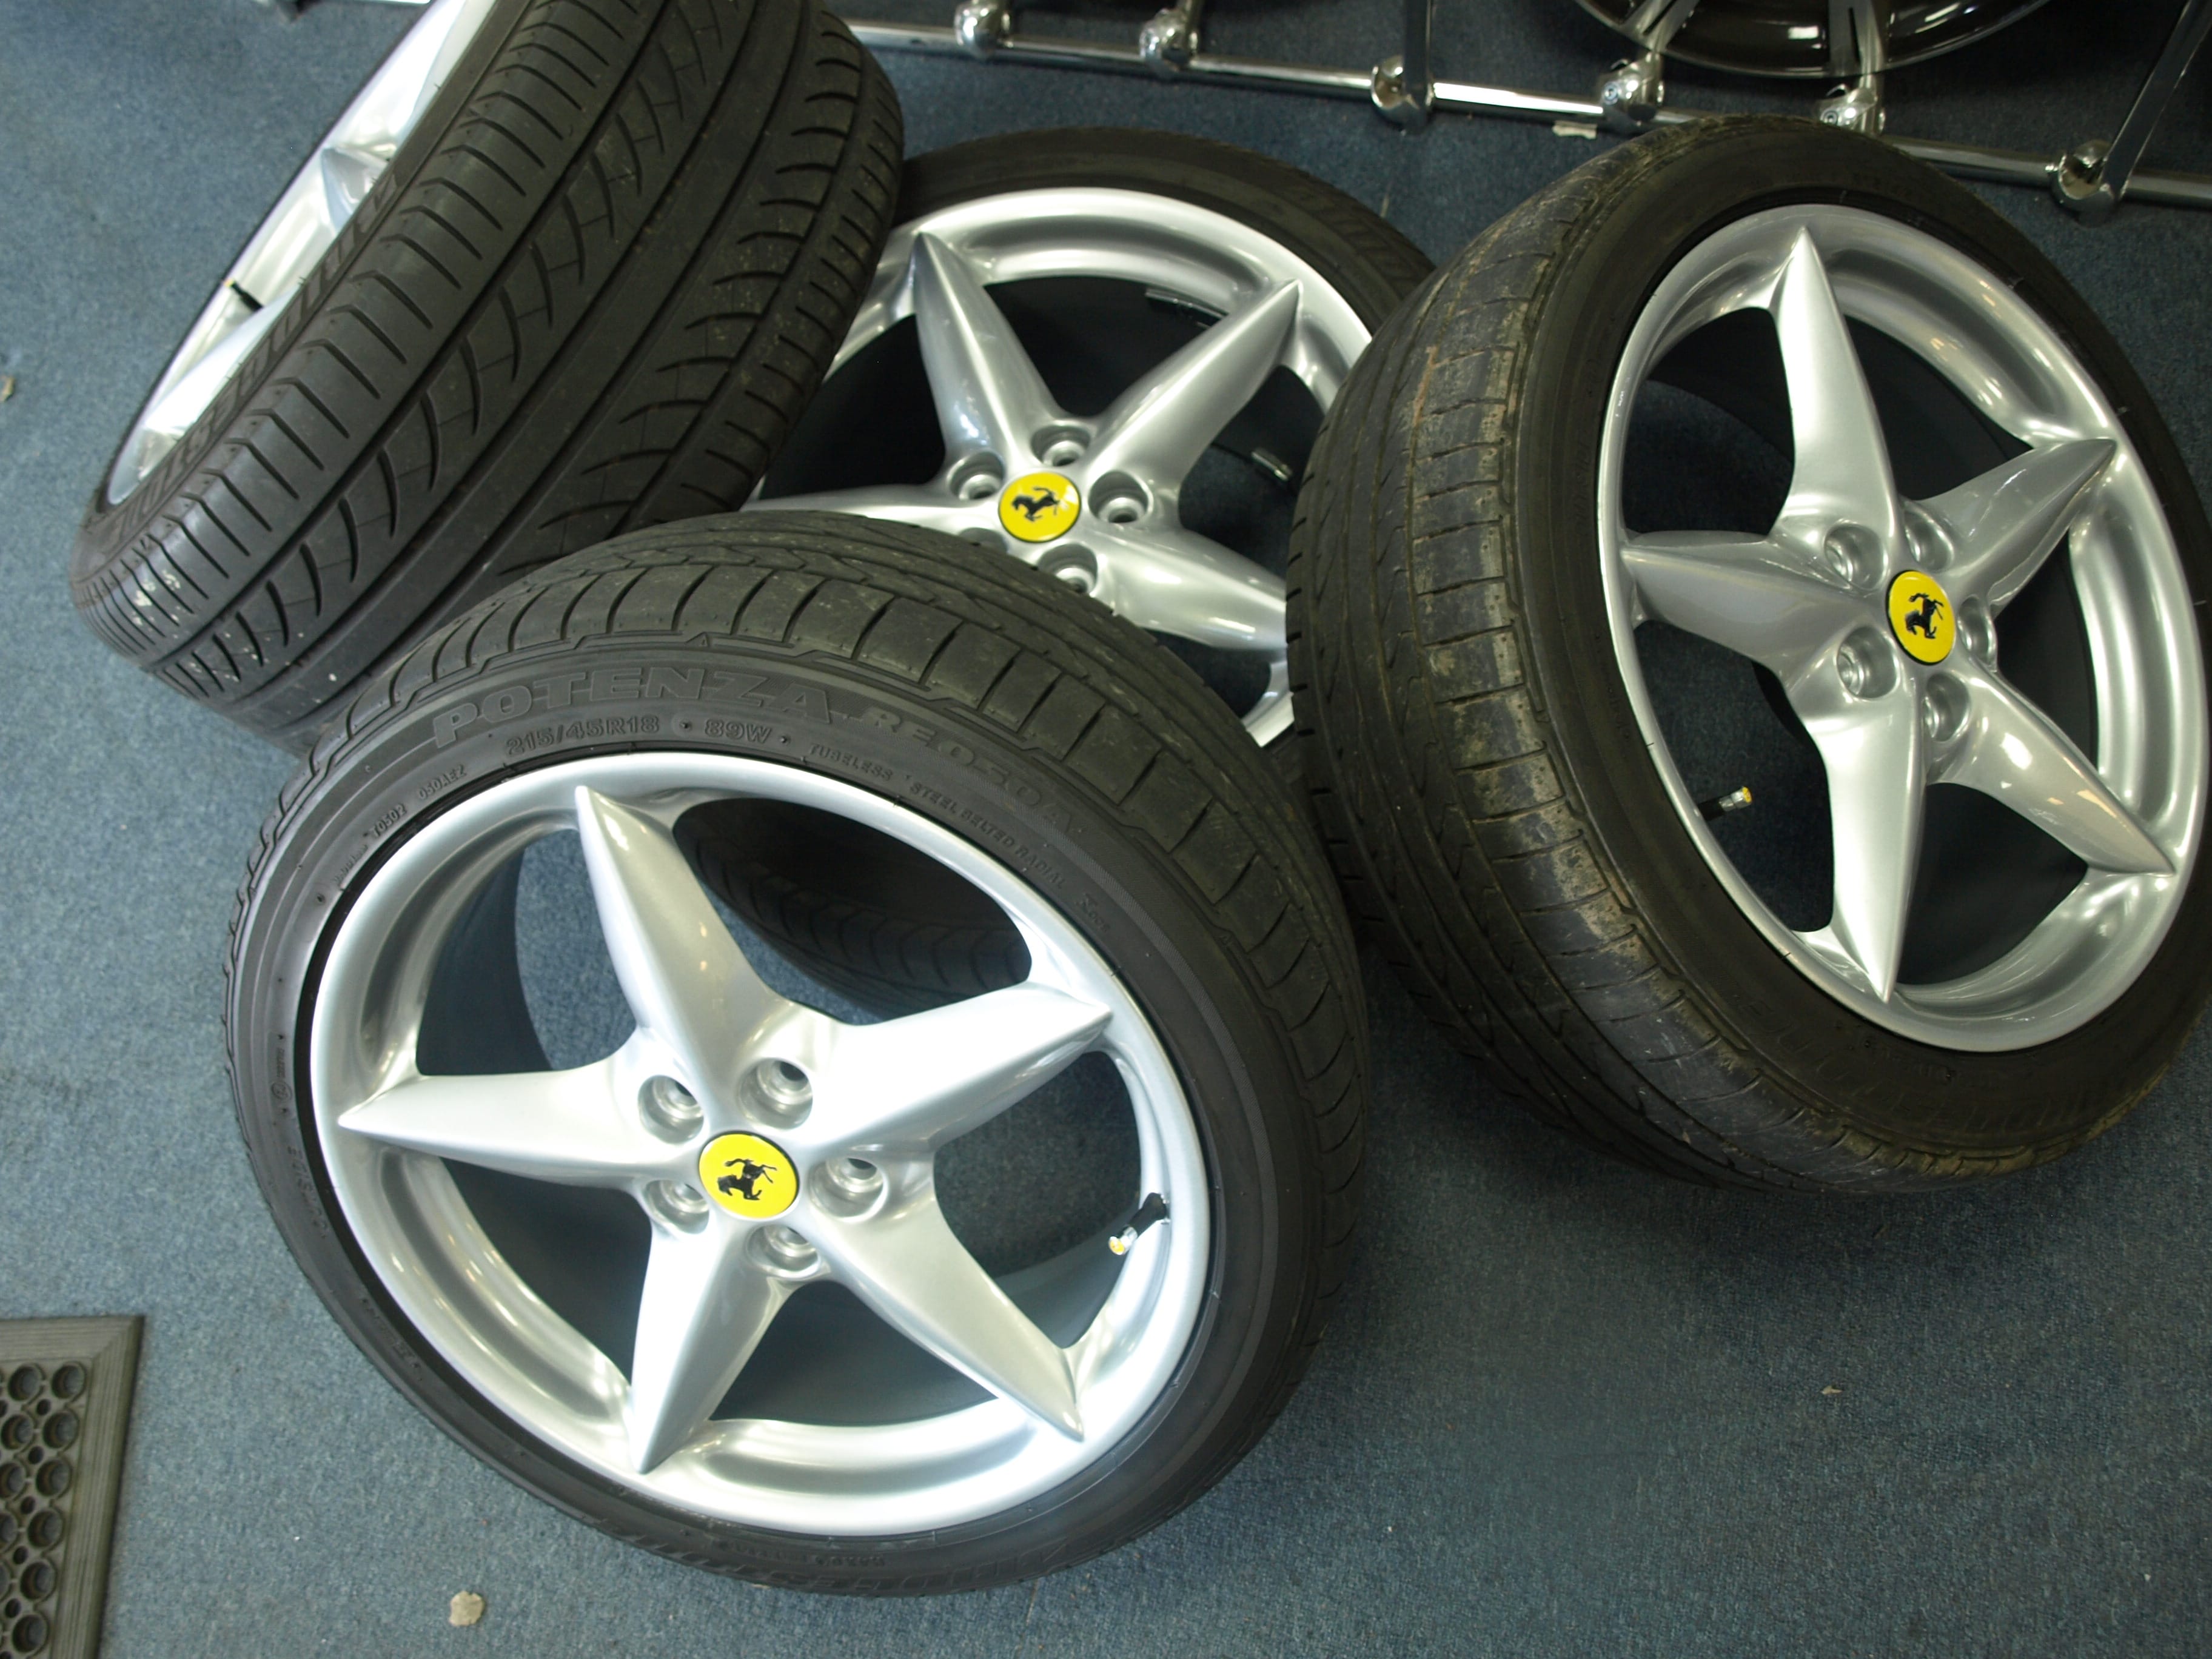 Ferrari 360 Modena wheels